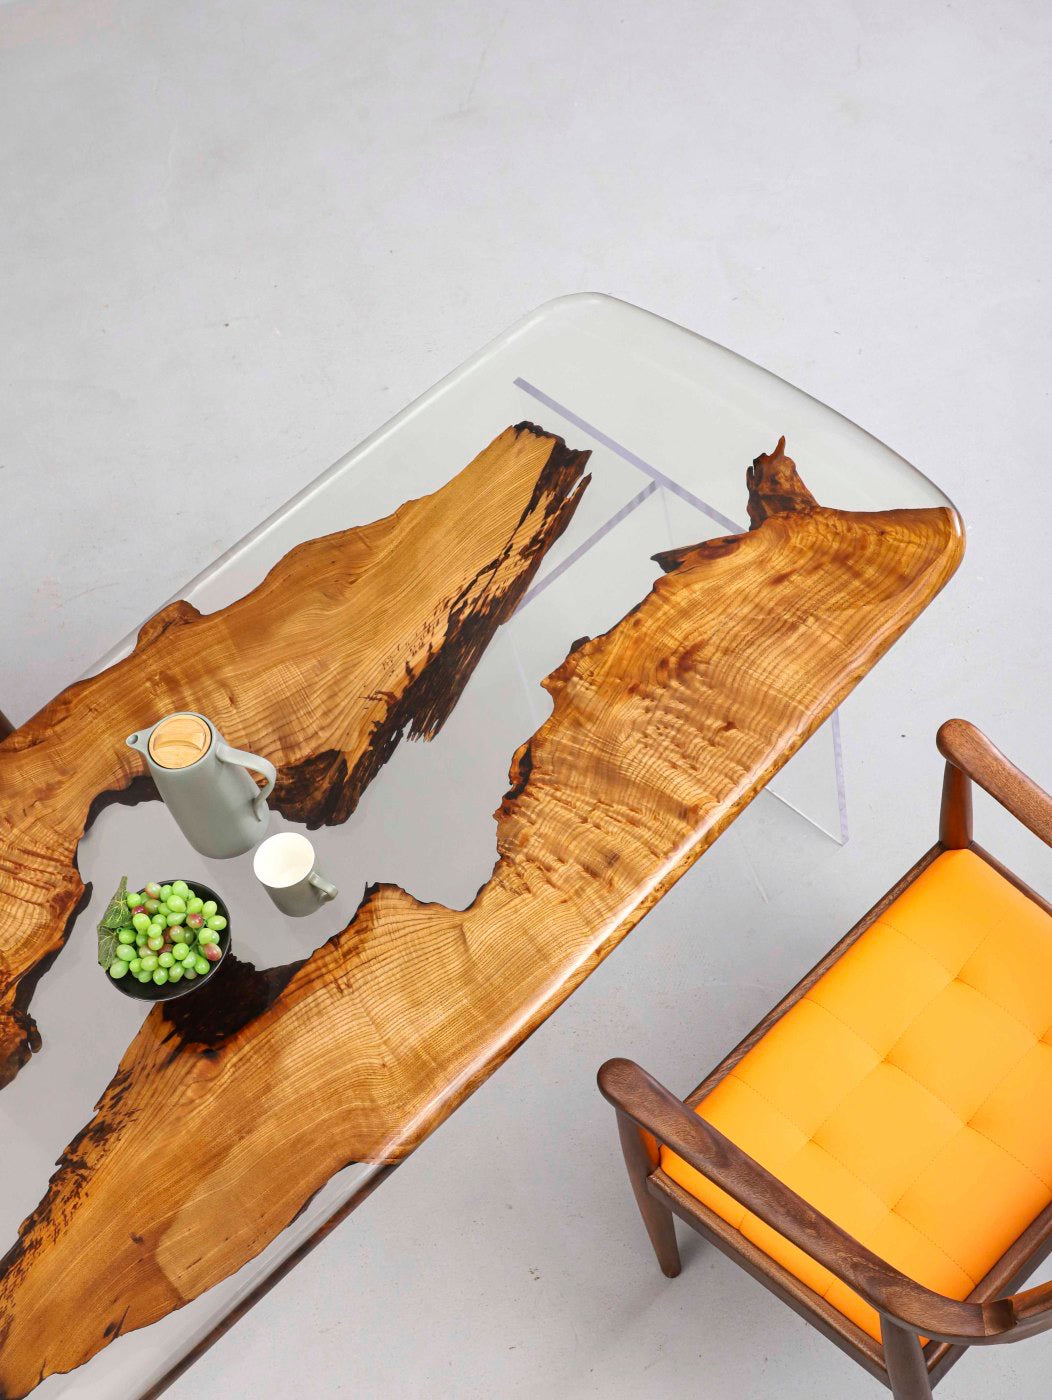 طاولة خشب الكافور من راتنجات الايبوكسي الحبوب اللطيفة، طاولة من راتنجات الايبوكسي ذات الملمس الجميل